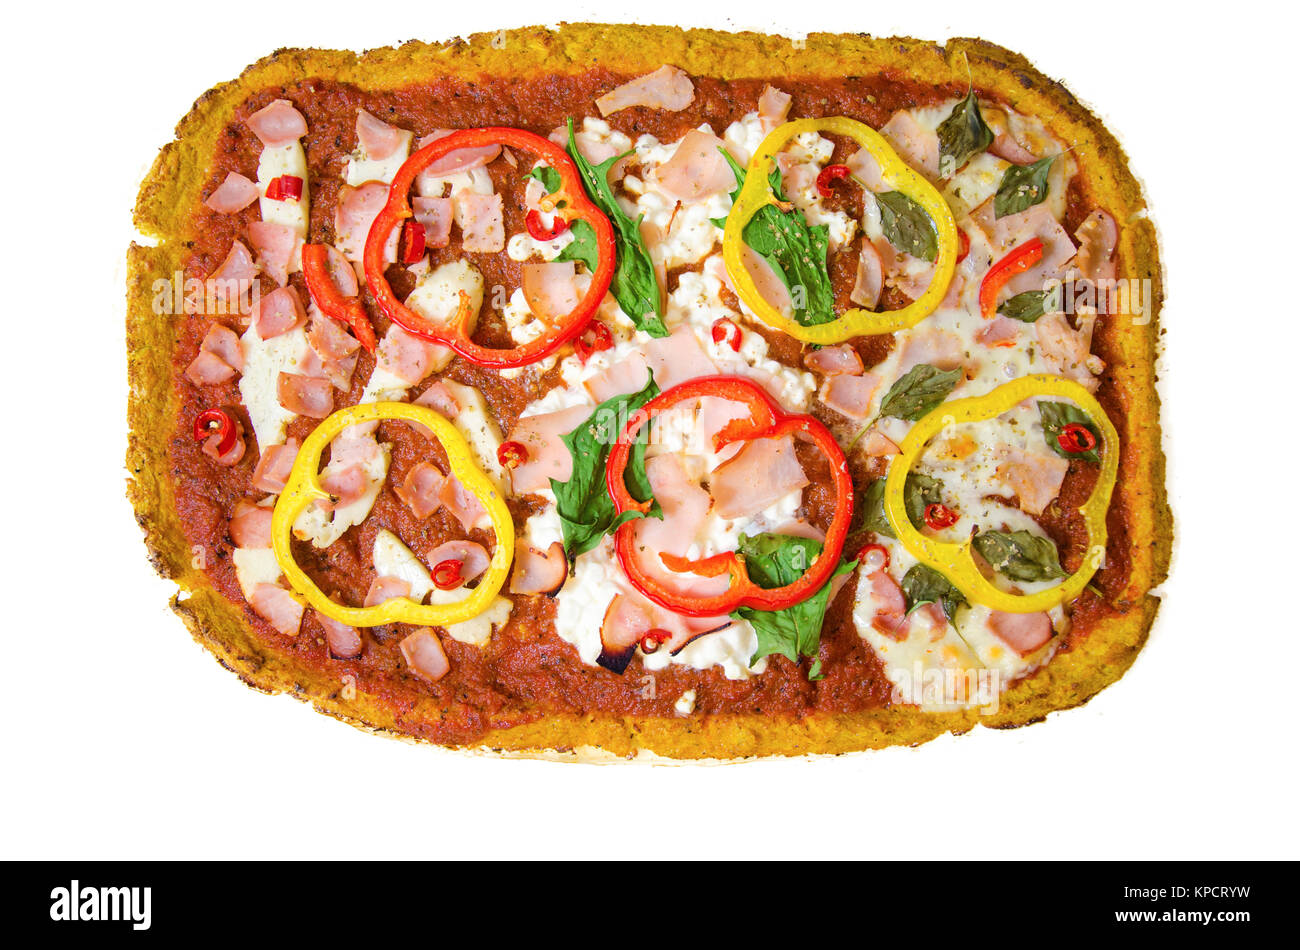 Cauliflower pizza Stock Photo